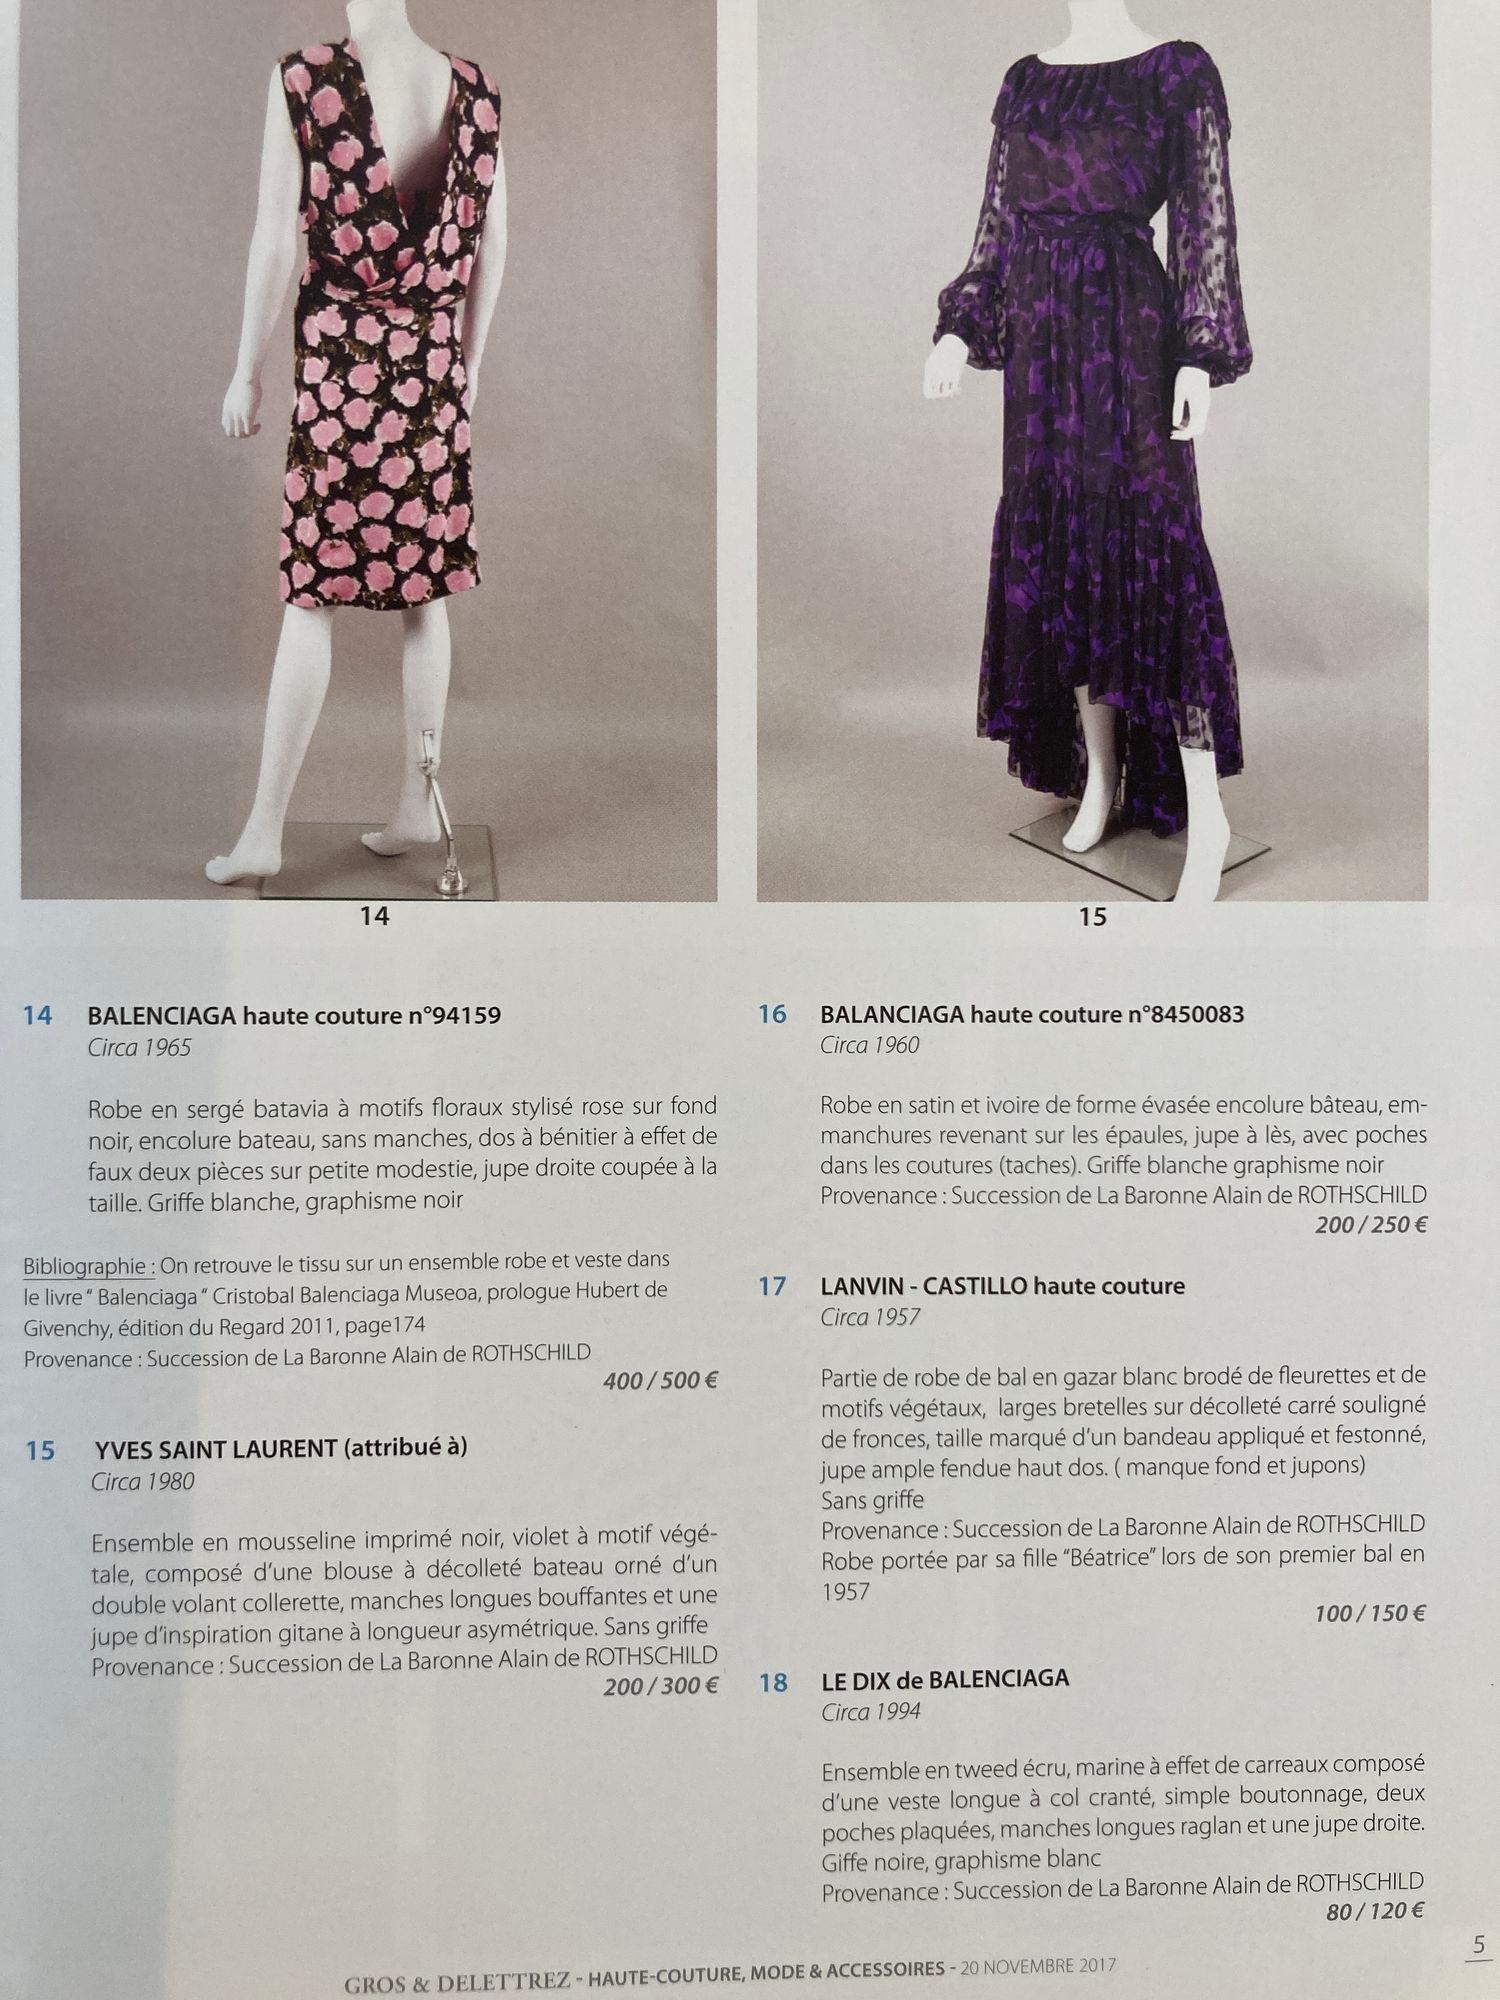 Paper Paris Haute Couture Auction Catalog 2017 Published by Gros & Delettrez For Sale